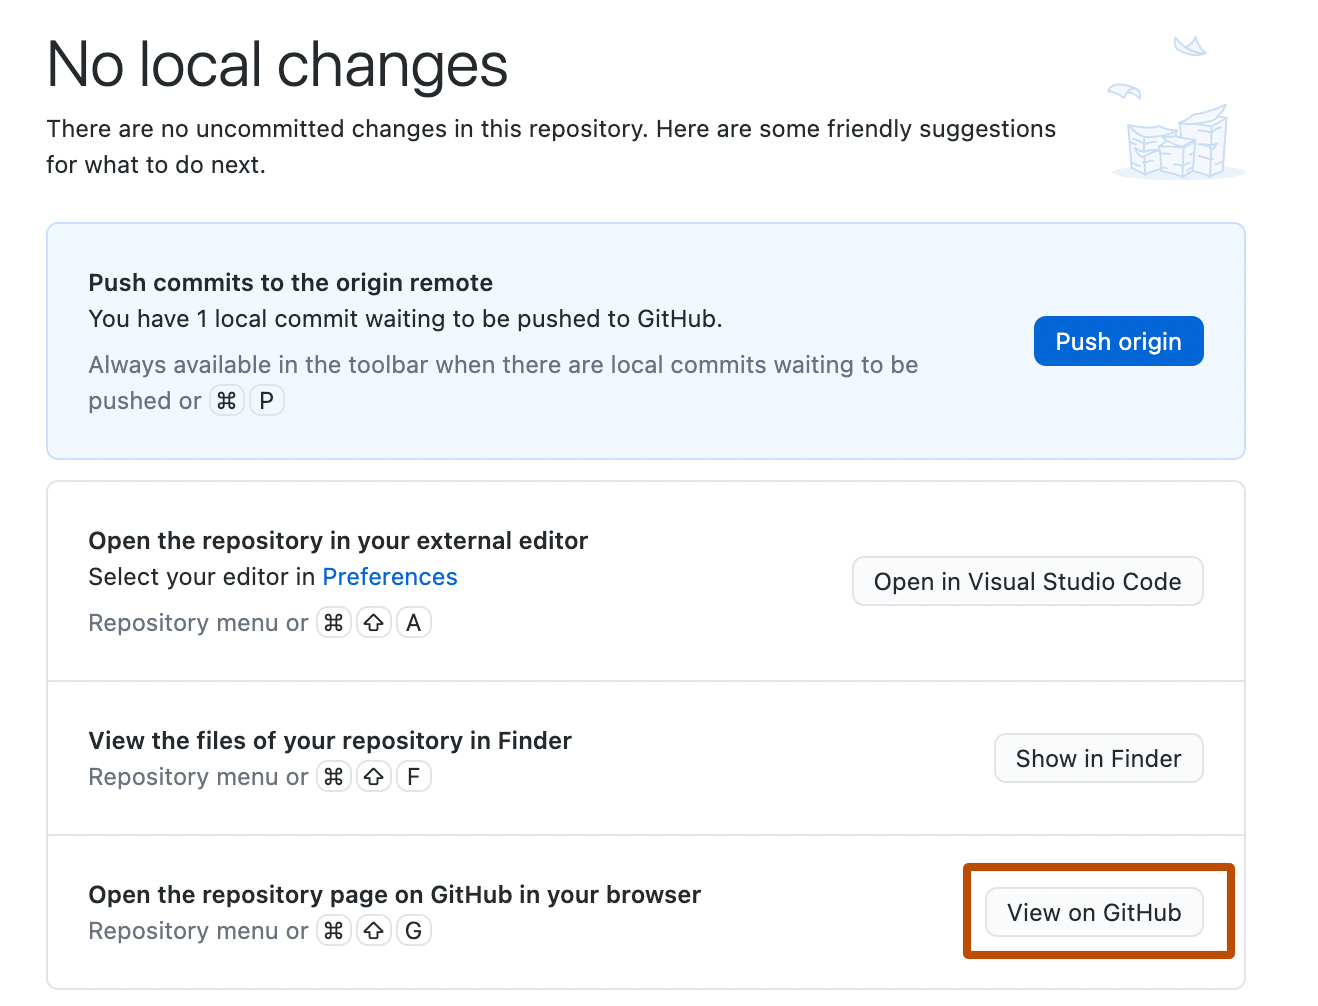 Снимок экрана: экран "Нет локальных изменений". В списке предложений кнопка с надписью "Вид на GitHub" выделена оранжевым контуром.